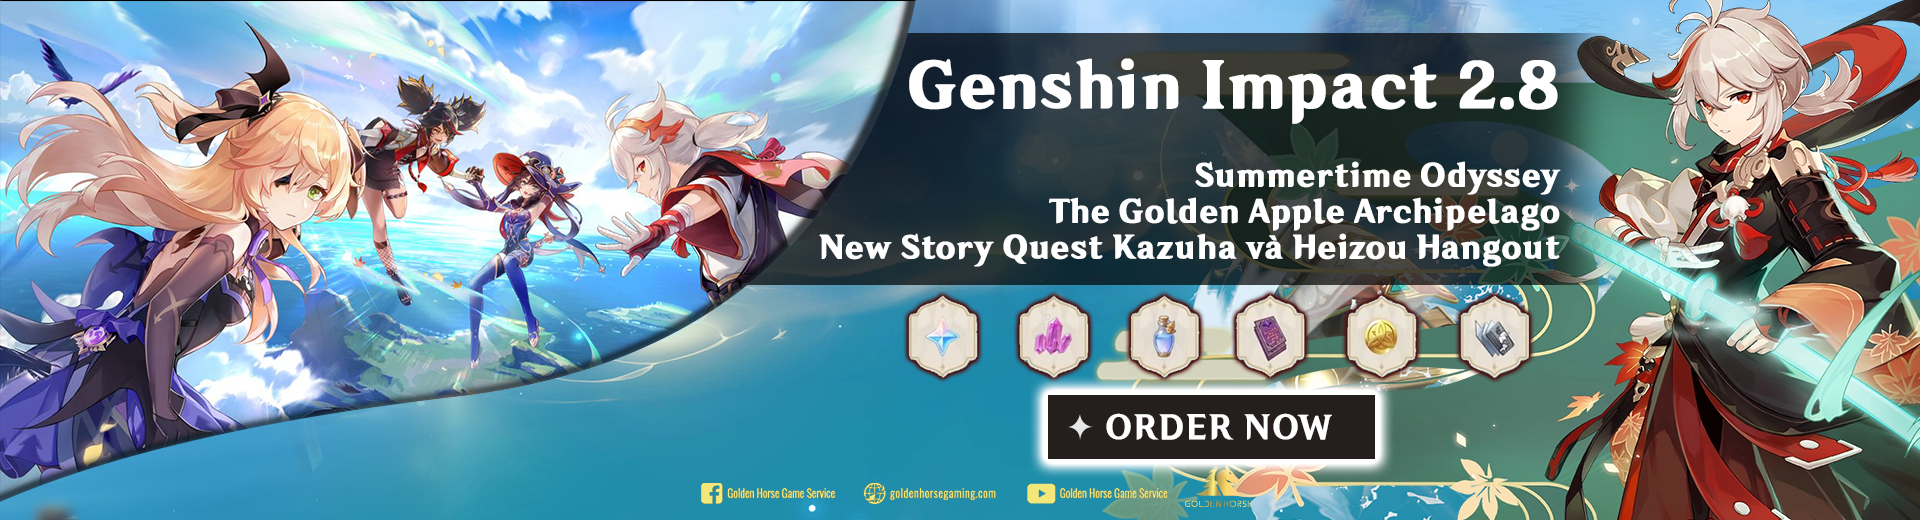 FULL Genshin impact 2.8 banner